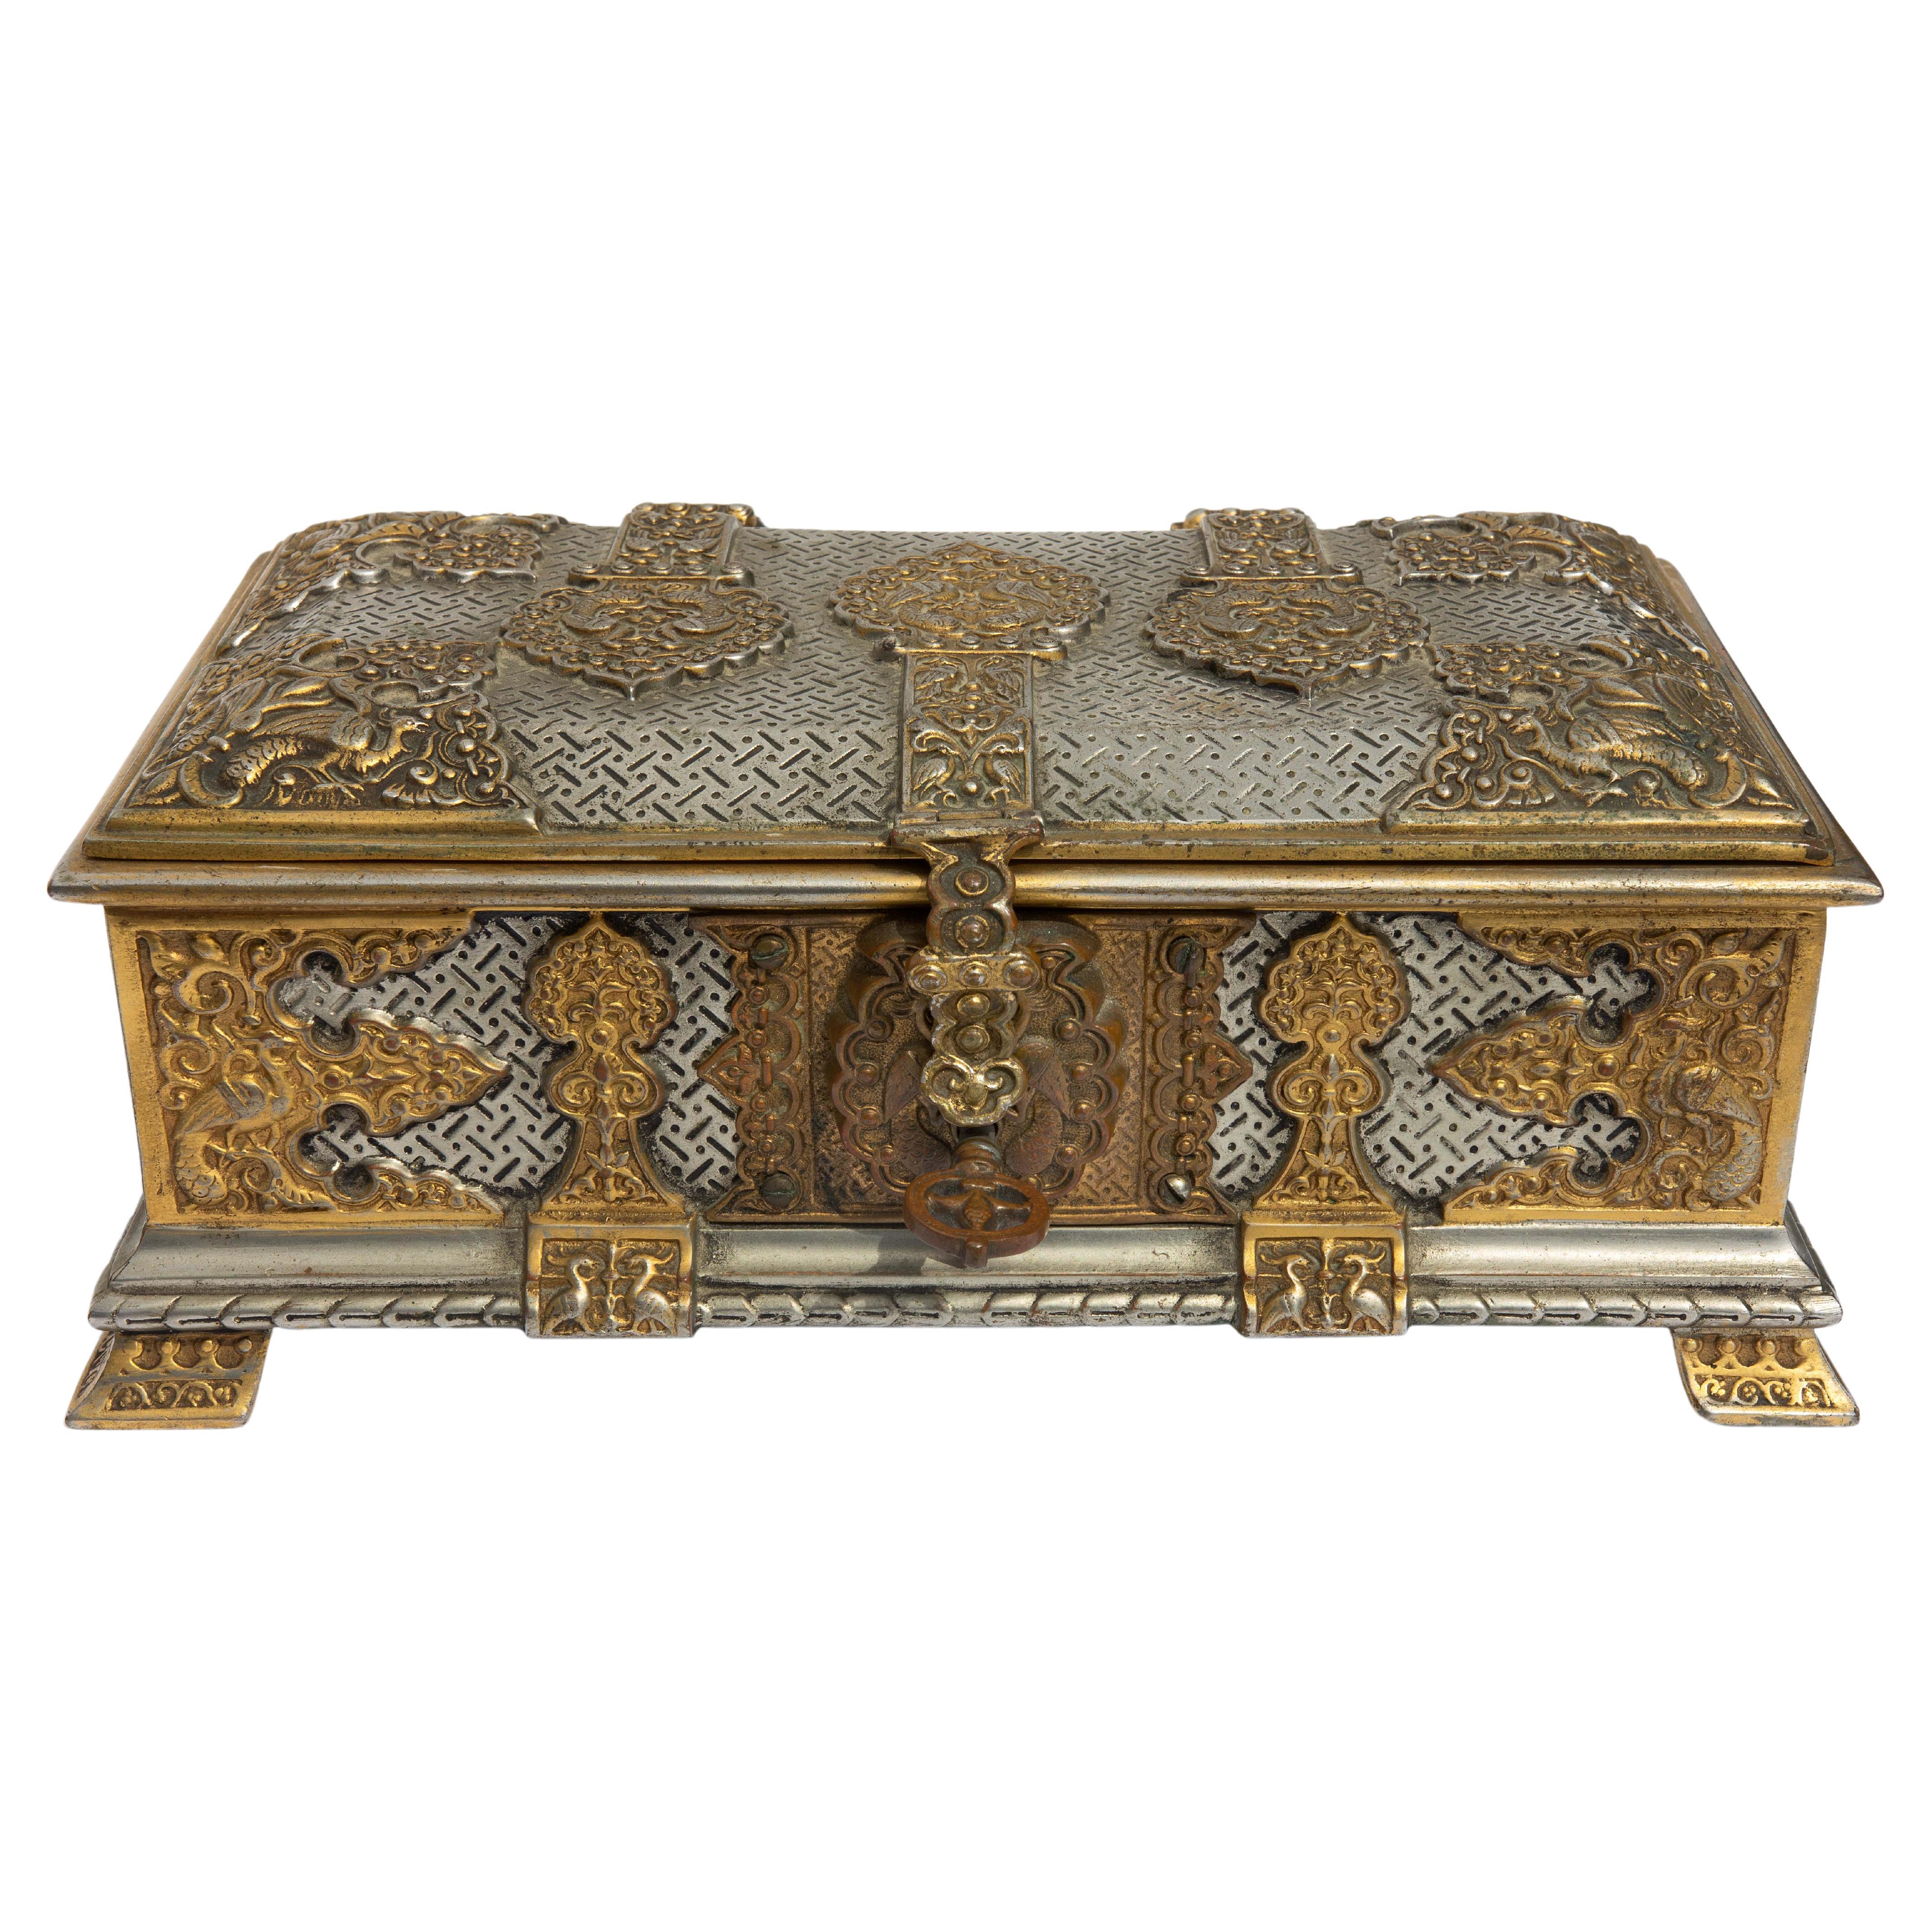 Boîte orientaliste du 19ème siècle en argent et bronze doré